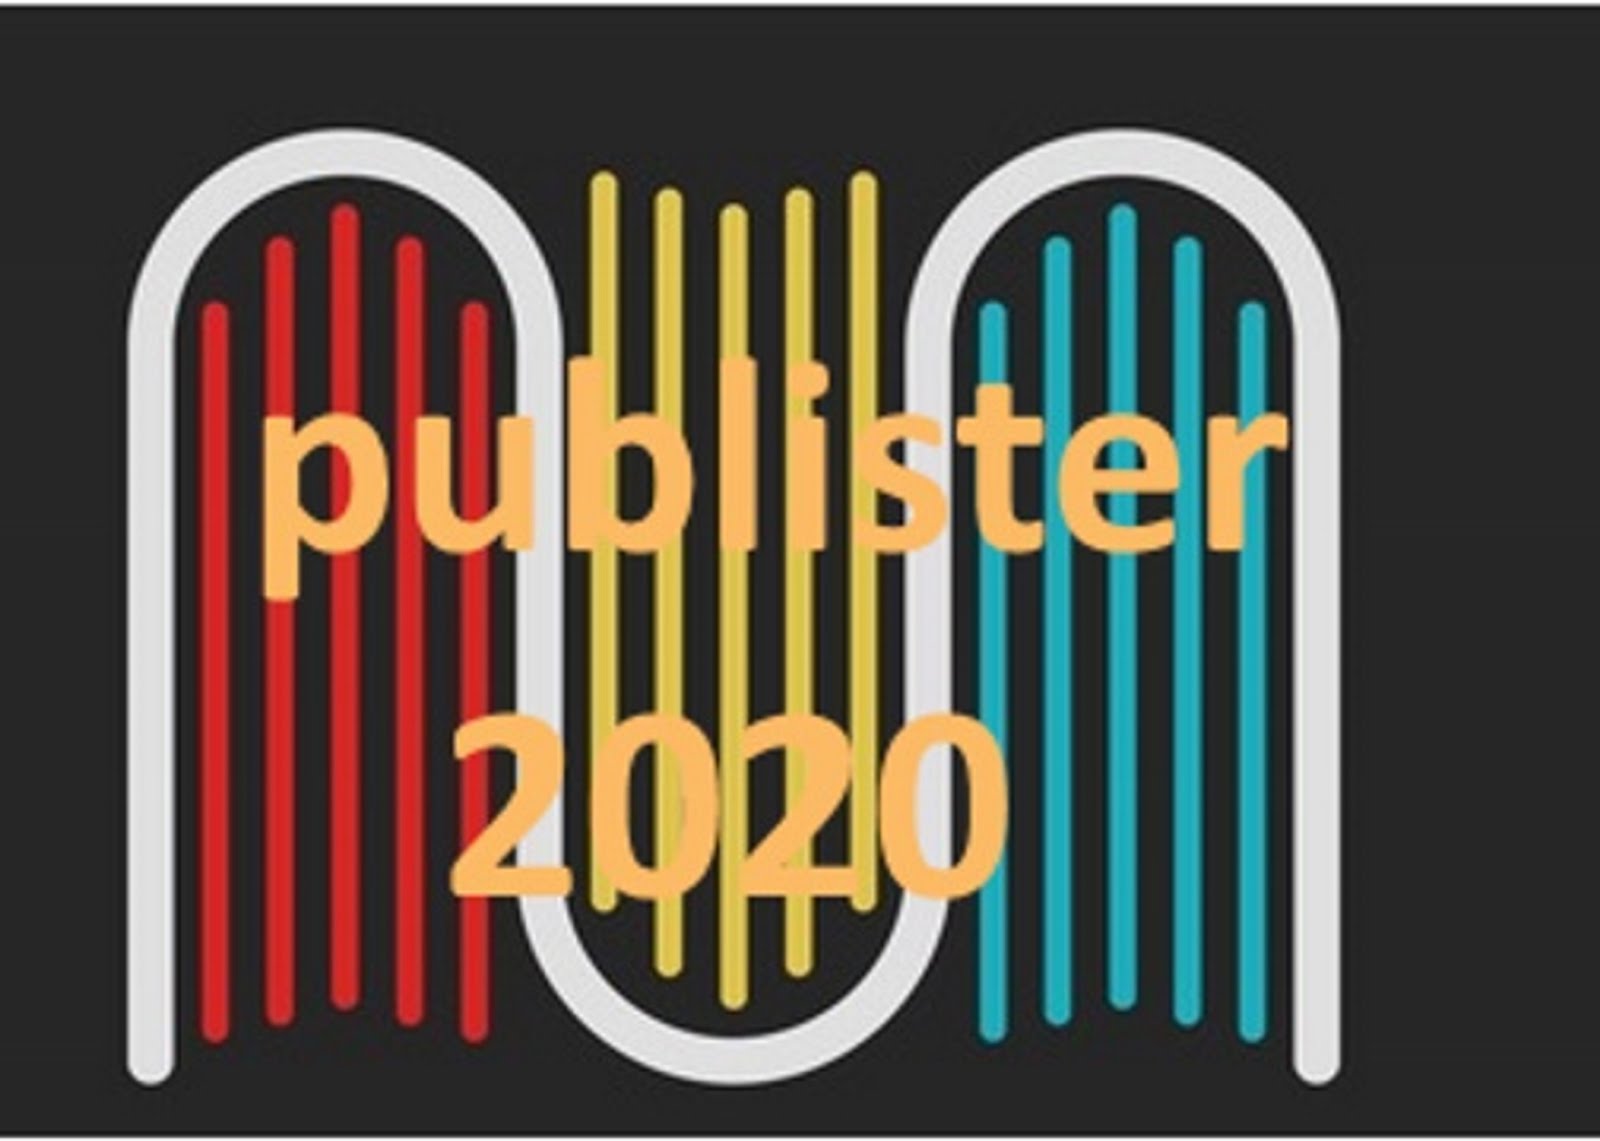 publister 2020